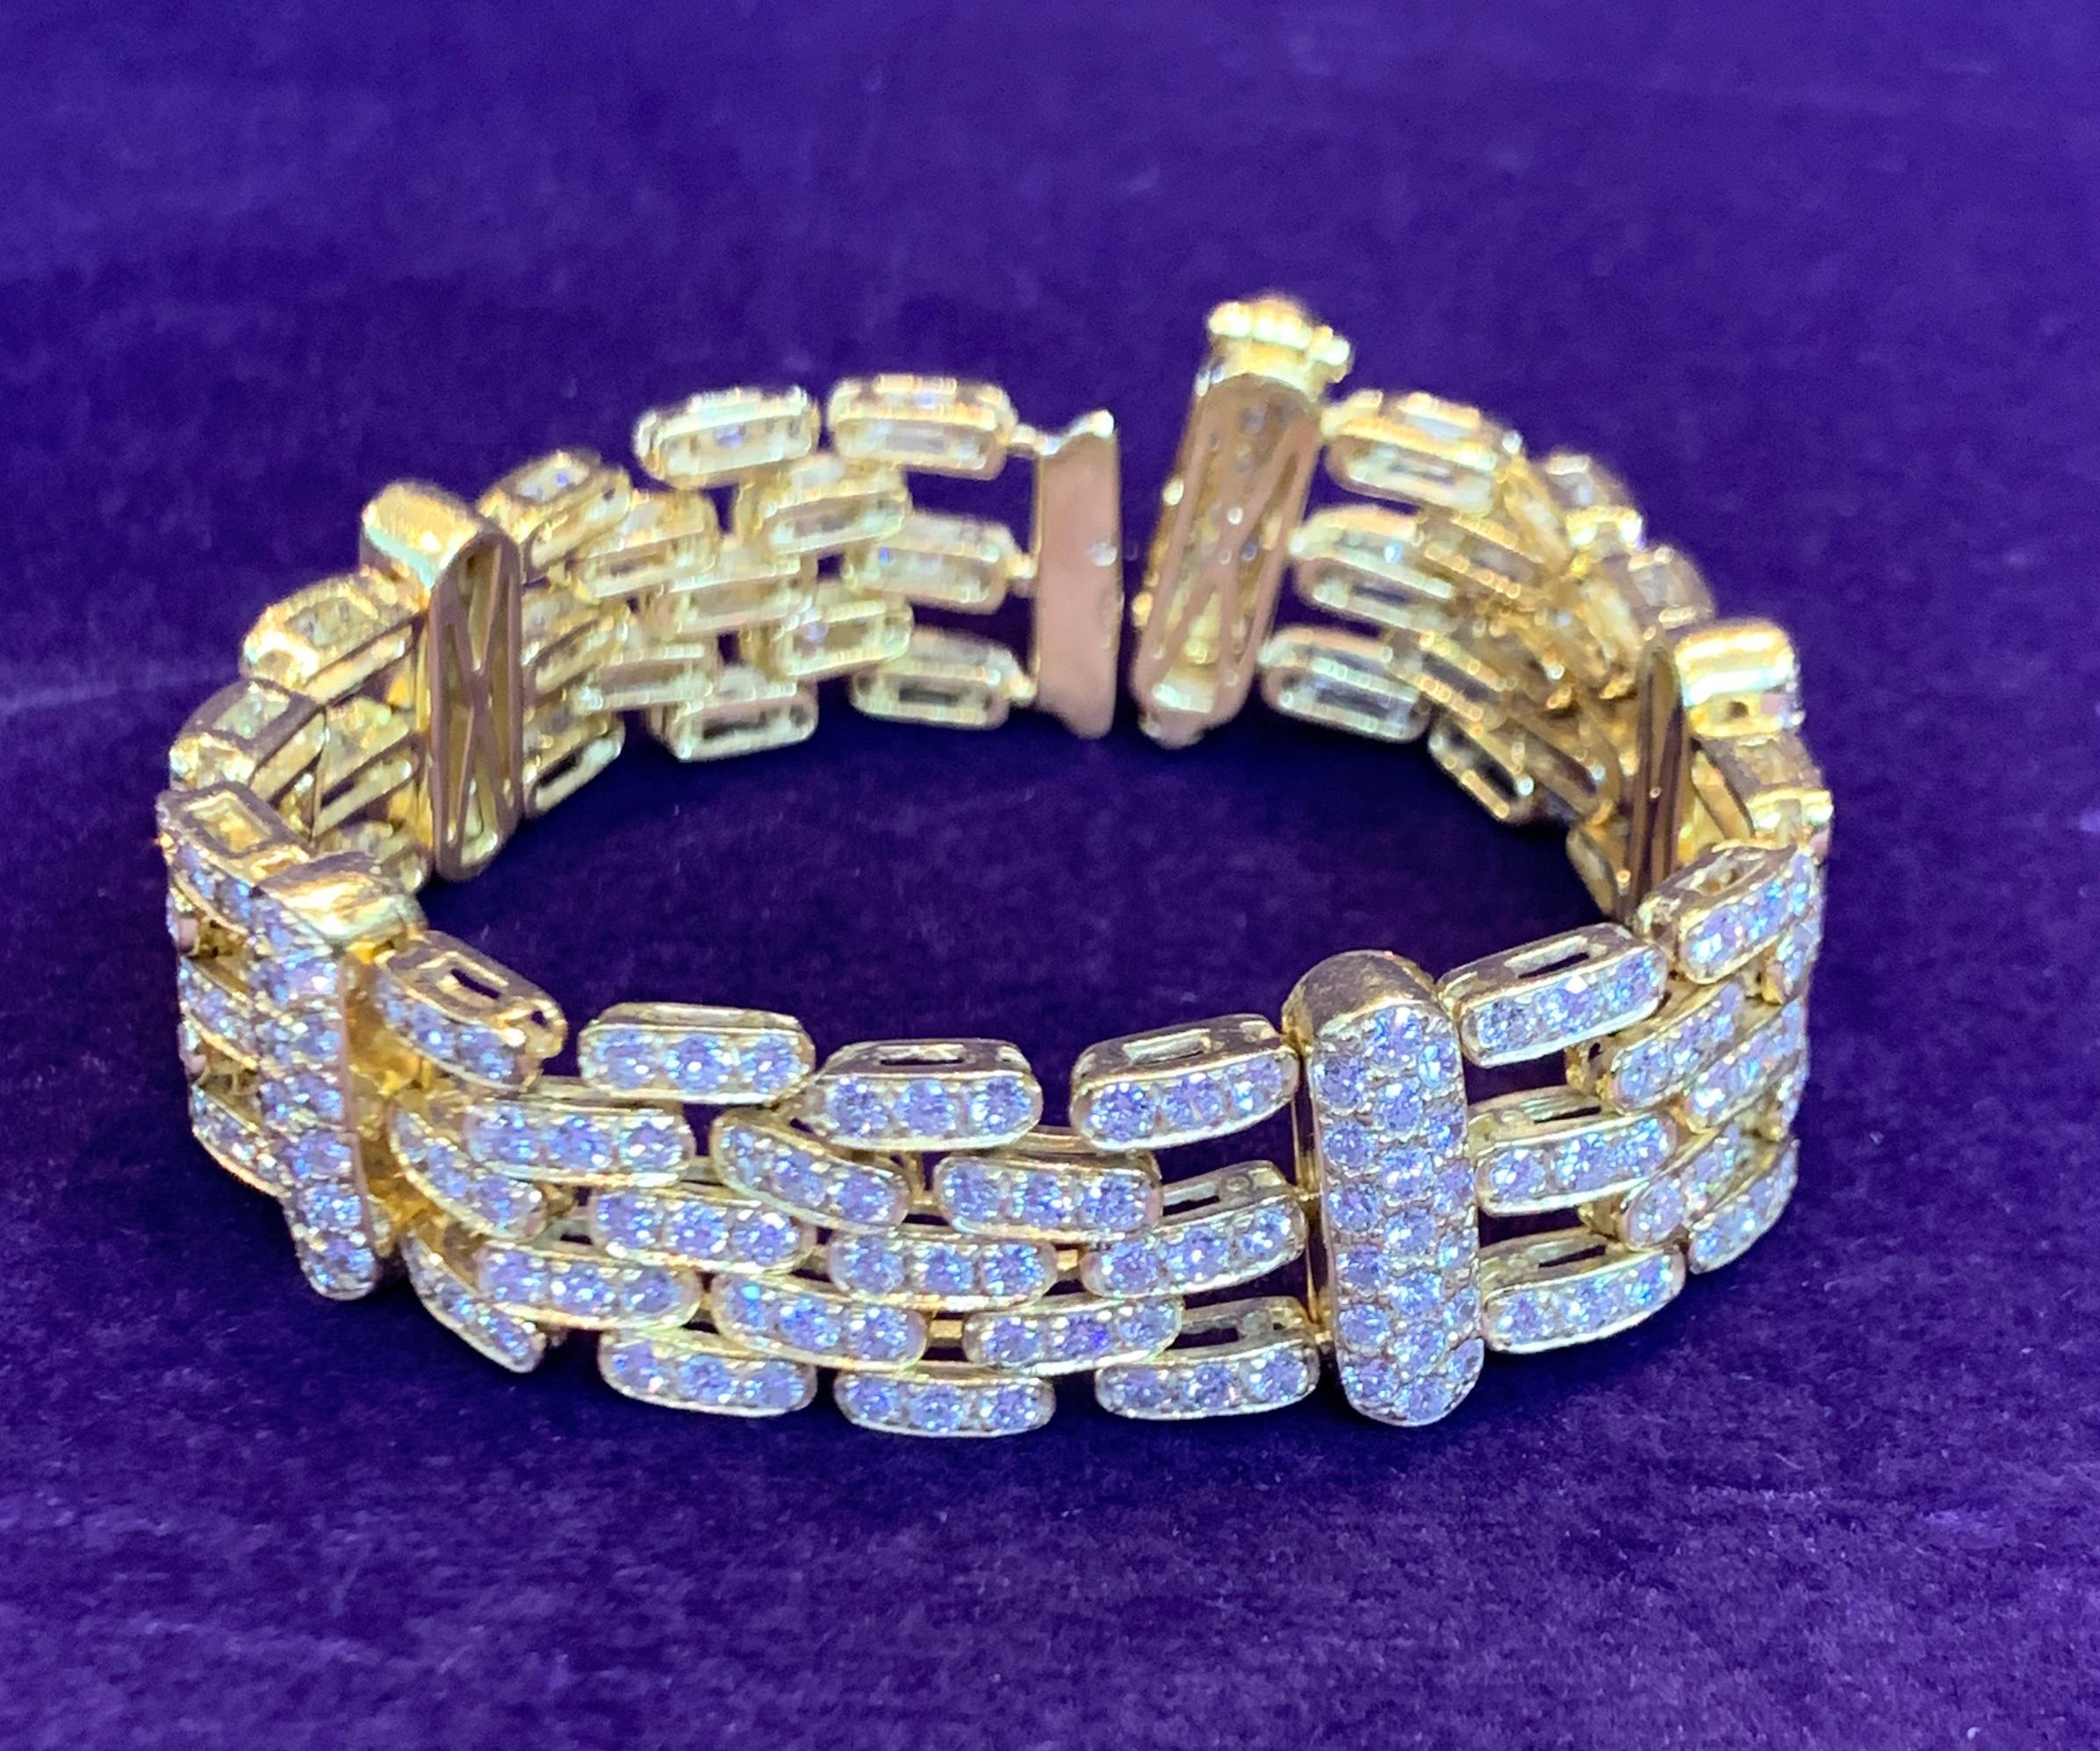 herrenarmband aus 18 Karat Gelbgold mit 290 Diamanten im Brillantschliff mit einem Gewicht von ca. 11,80 ct.
Länge: 6,5